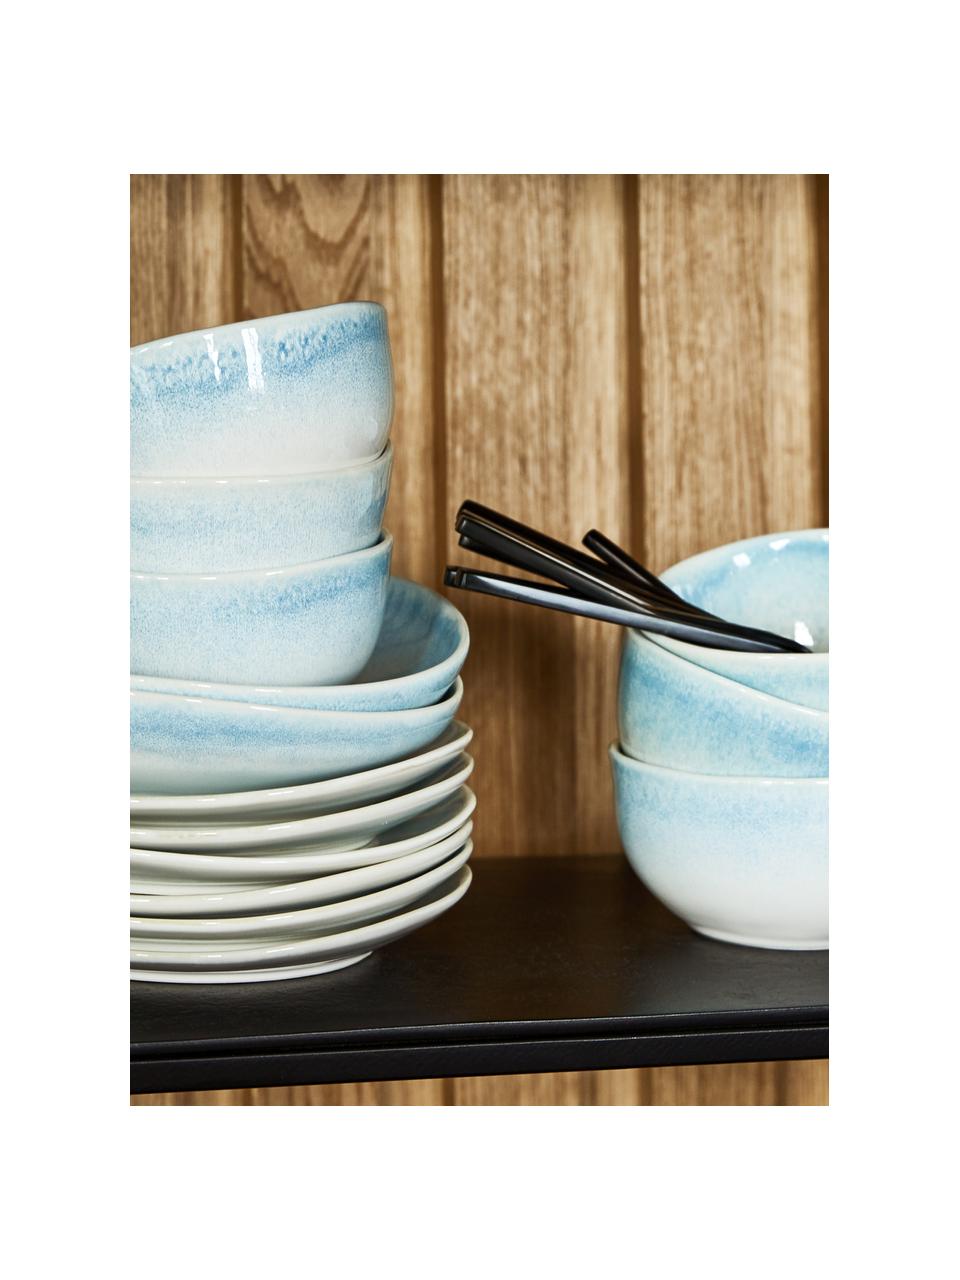 Assiette à soupe porcelaine bleu ciel Amalia, 2 pièces, Porcelaine, Bleu ciel, blanc crème, Ø 20 cm